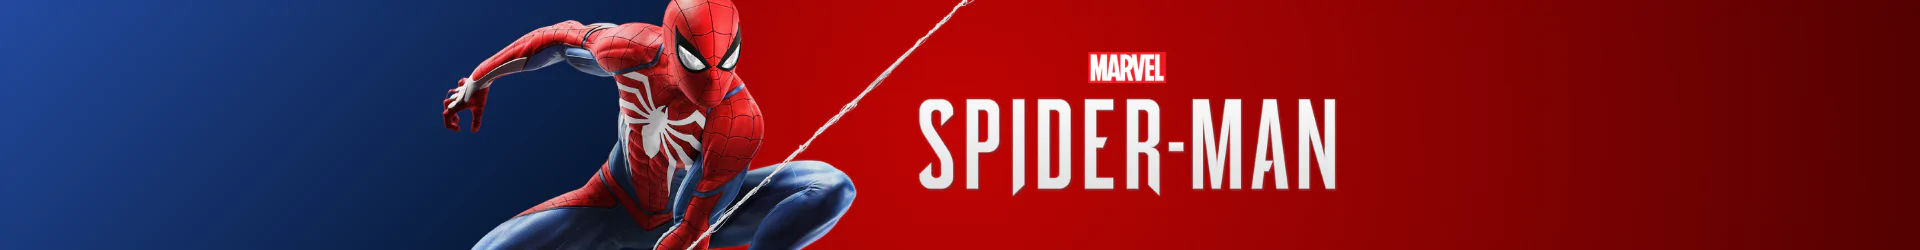 Spider-Man figuren banner